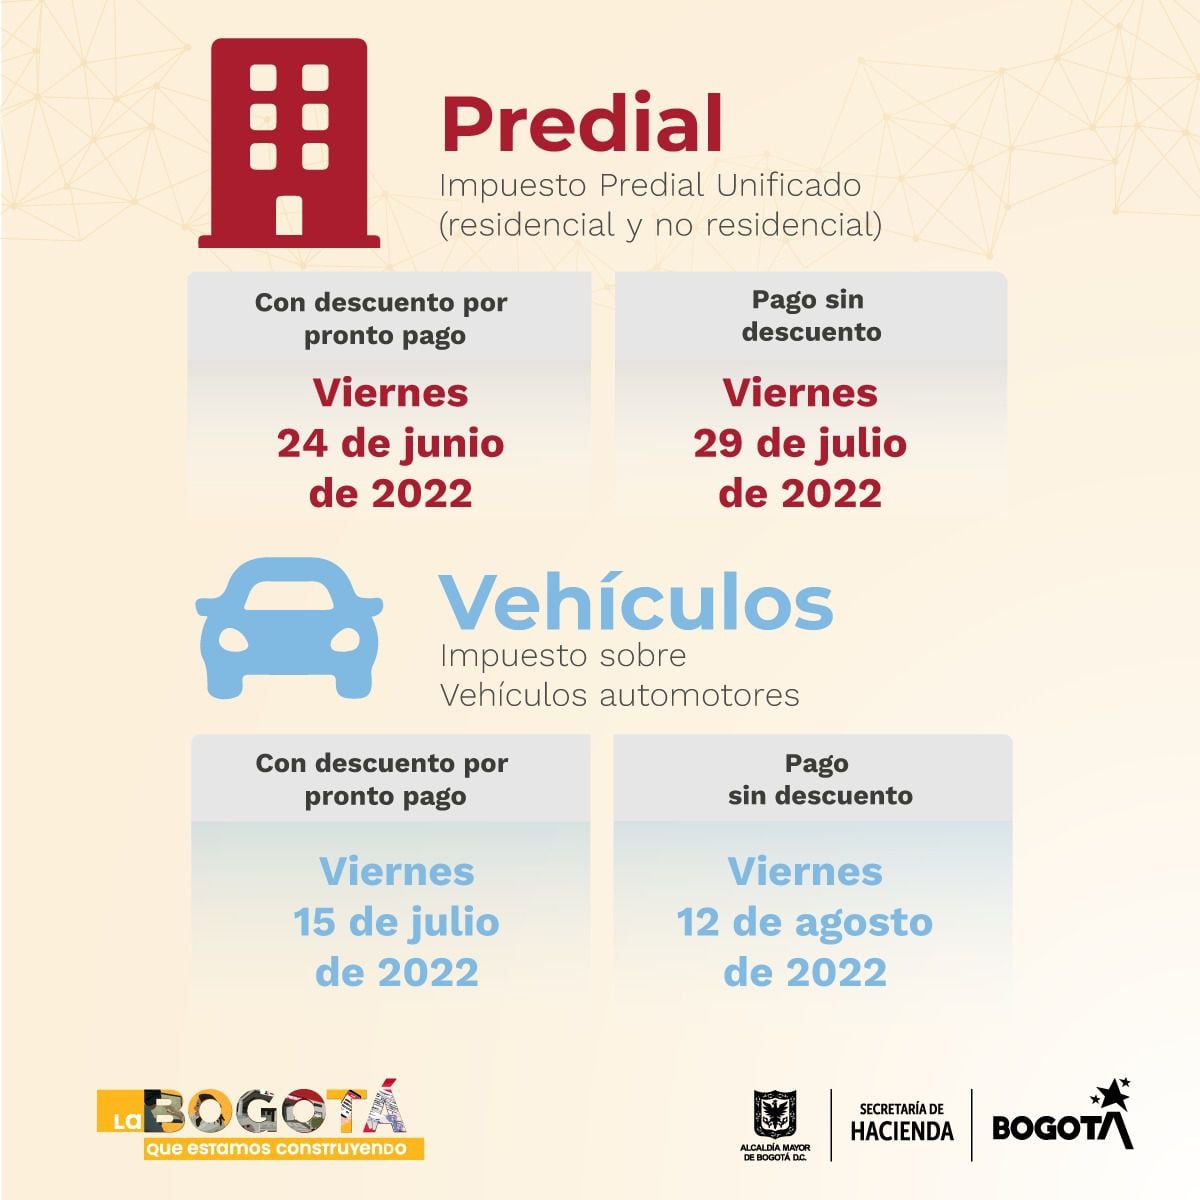 Nuevas fechas para pagar el impuesto predial y vehicular en Bogotá